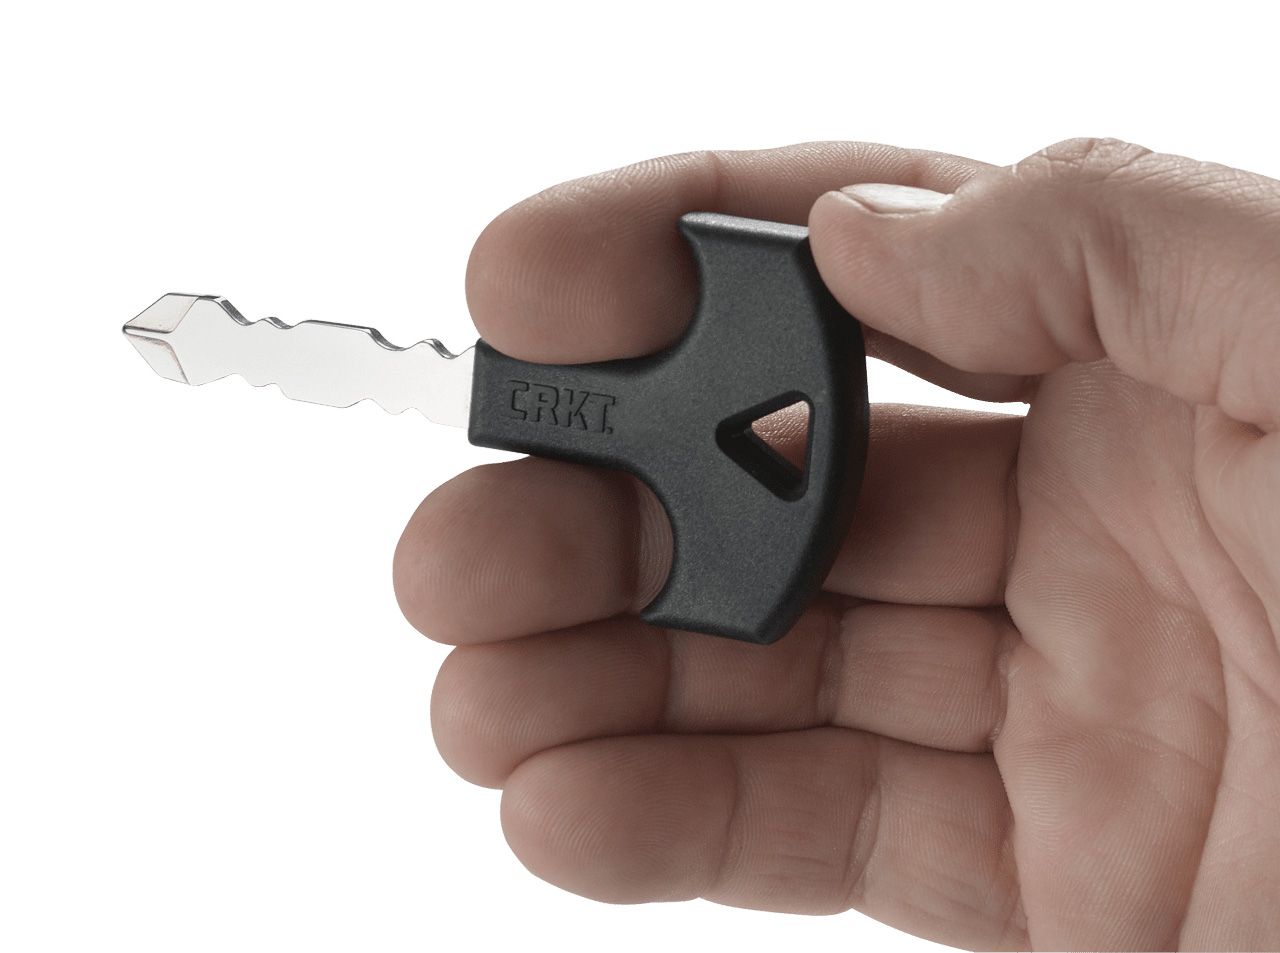 Предметы для самообороны. CRKT ключ. Нож Leatherman куботан. Вещи для самозащиты. Ключик самооборона.